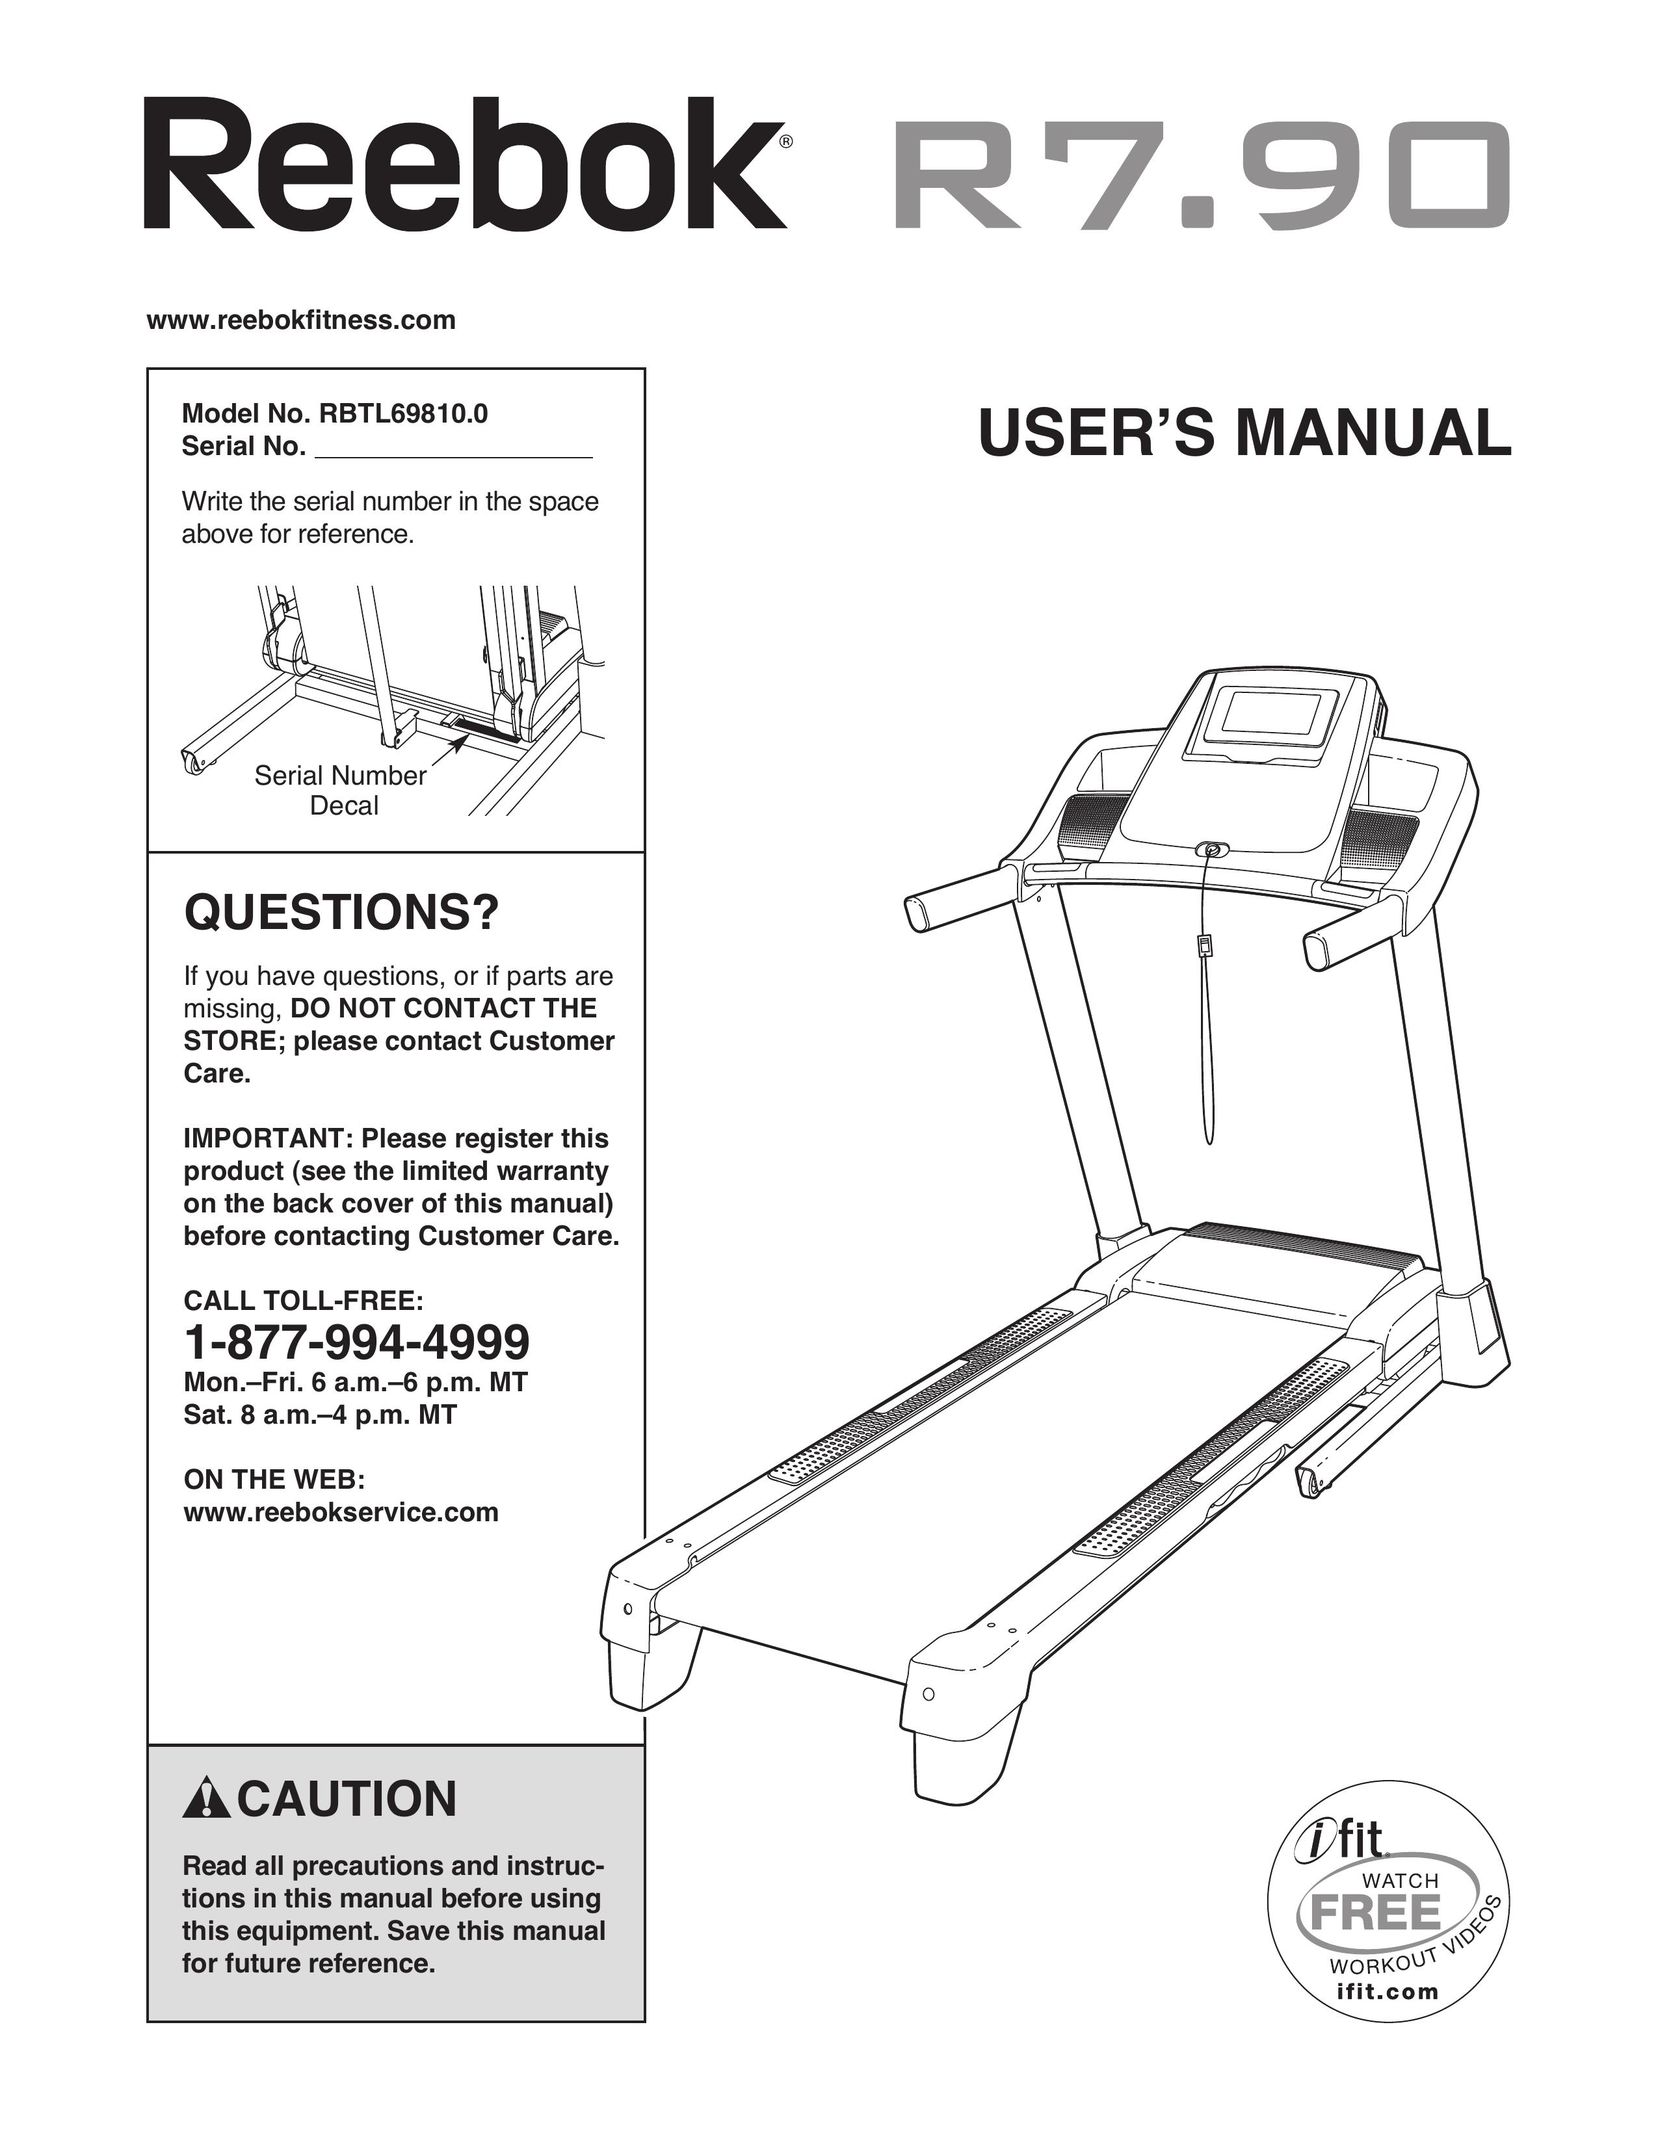 Reebok RBTL69810.0 Treadmill User Manual